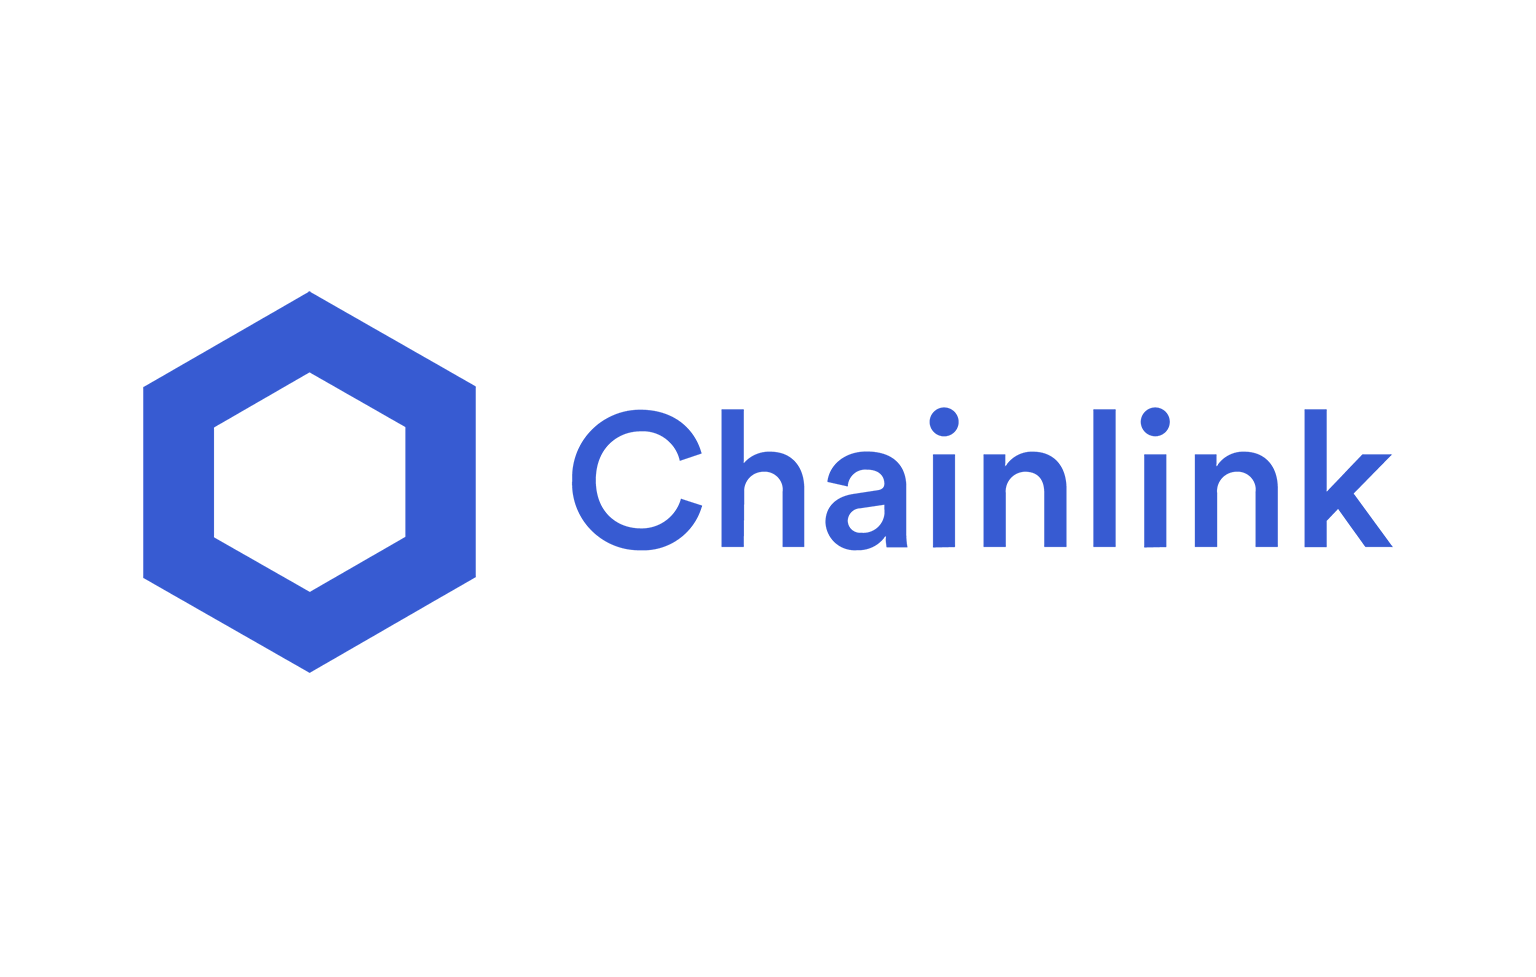 มาดูกันว่า Chainlink (LINK) คืออะไร? ทำงานอย่างไร?